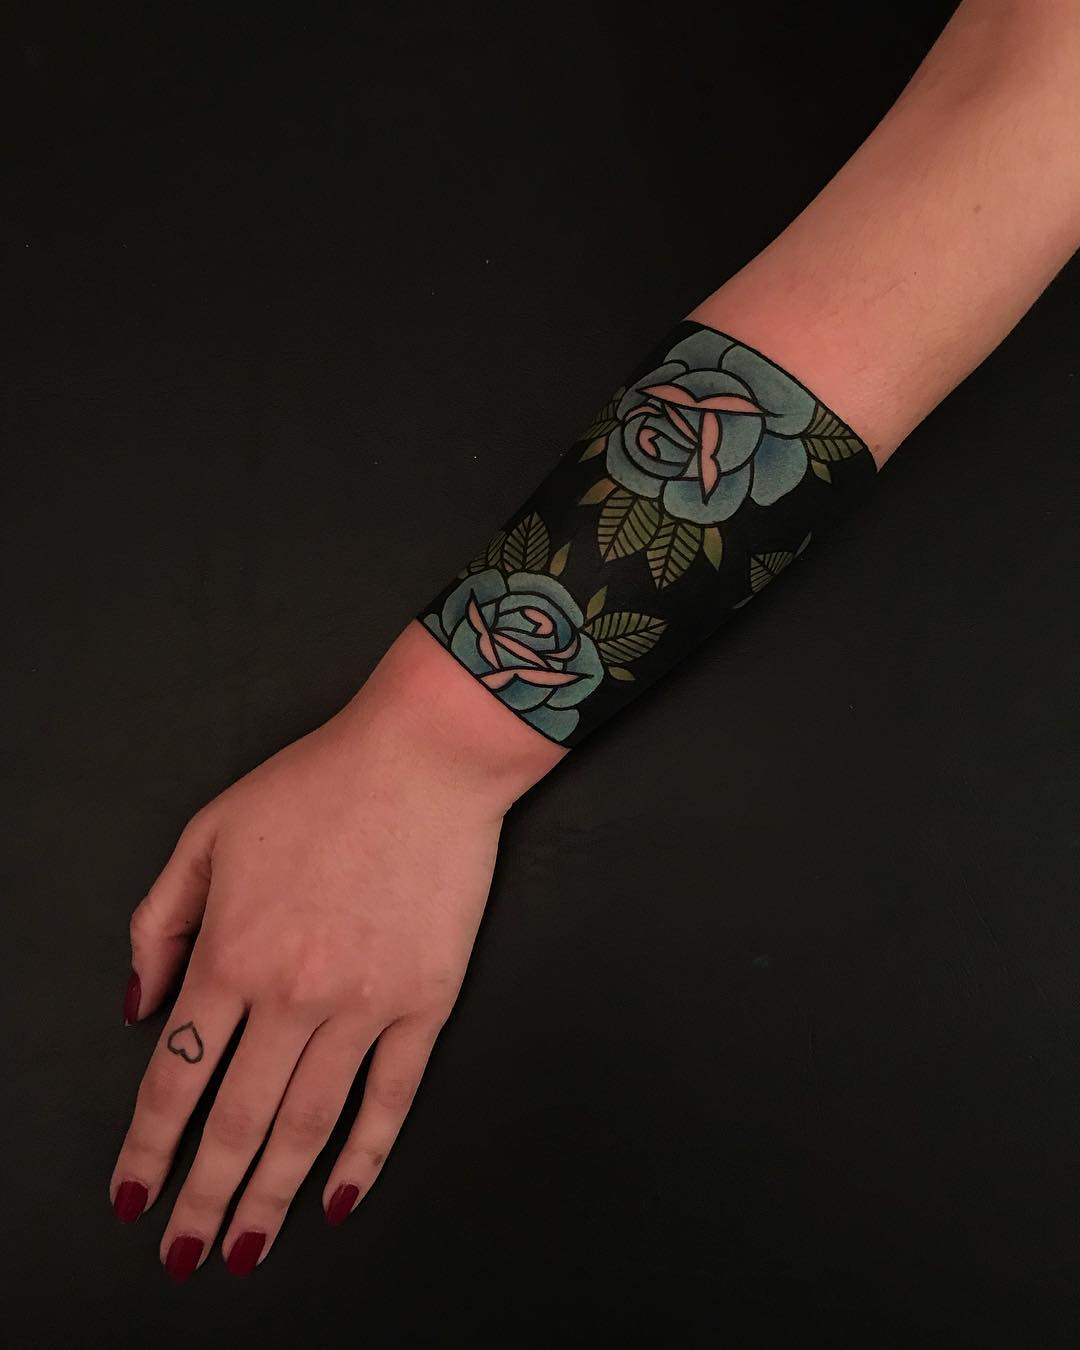 Blue rose wristband by tattooist Alejo GMZ